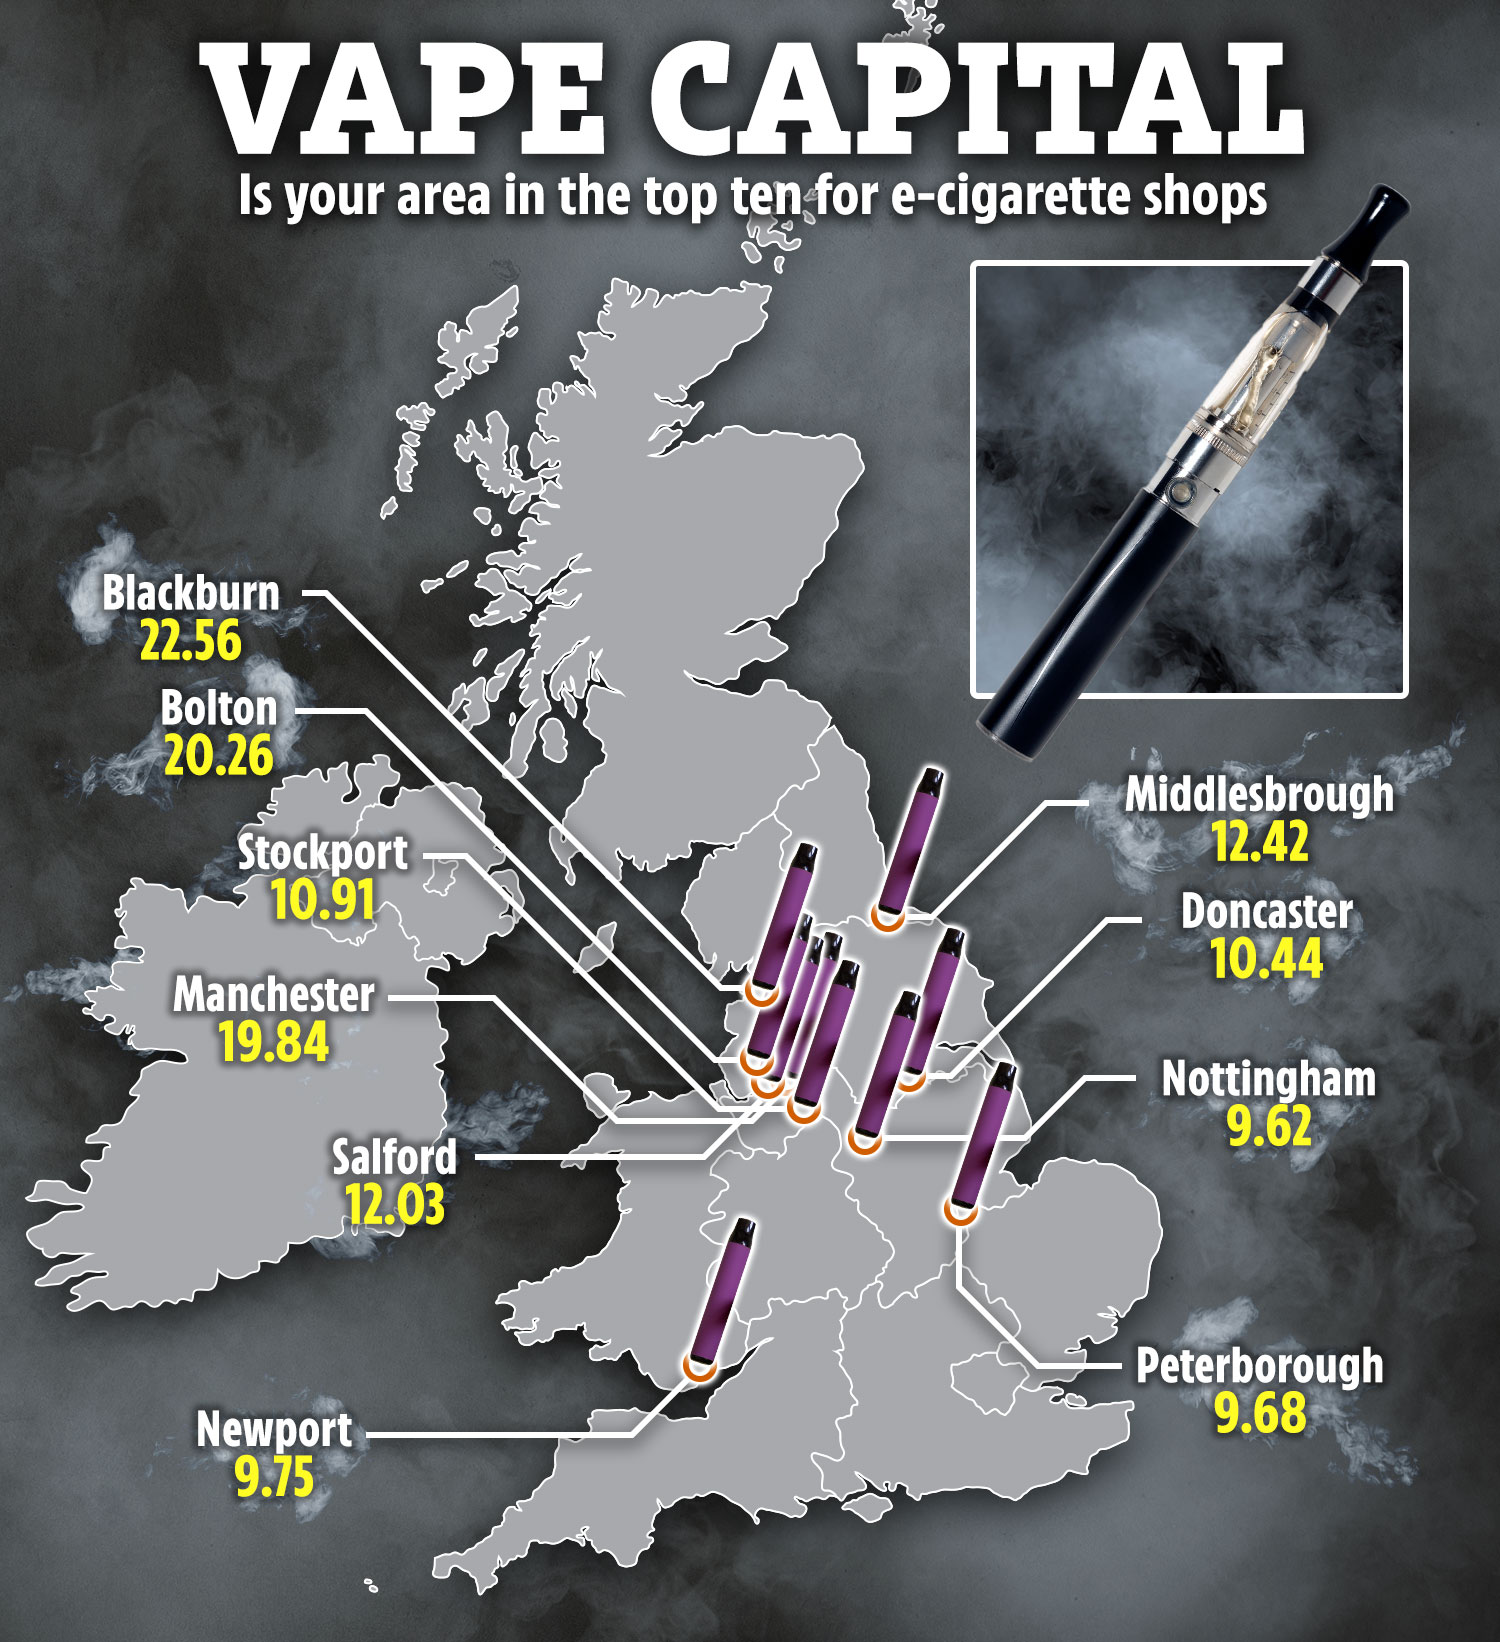 Eine Karte zeigt die Gebiete mit den meisten E-Zigaretten-Läden